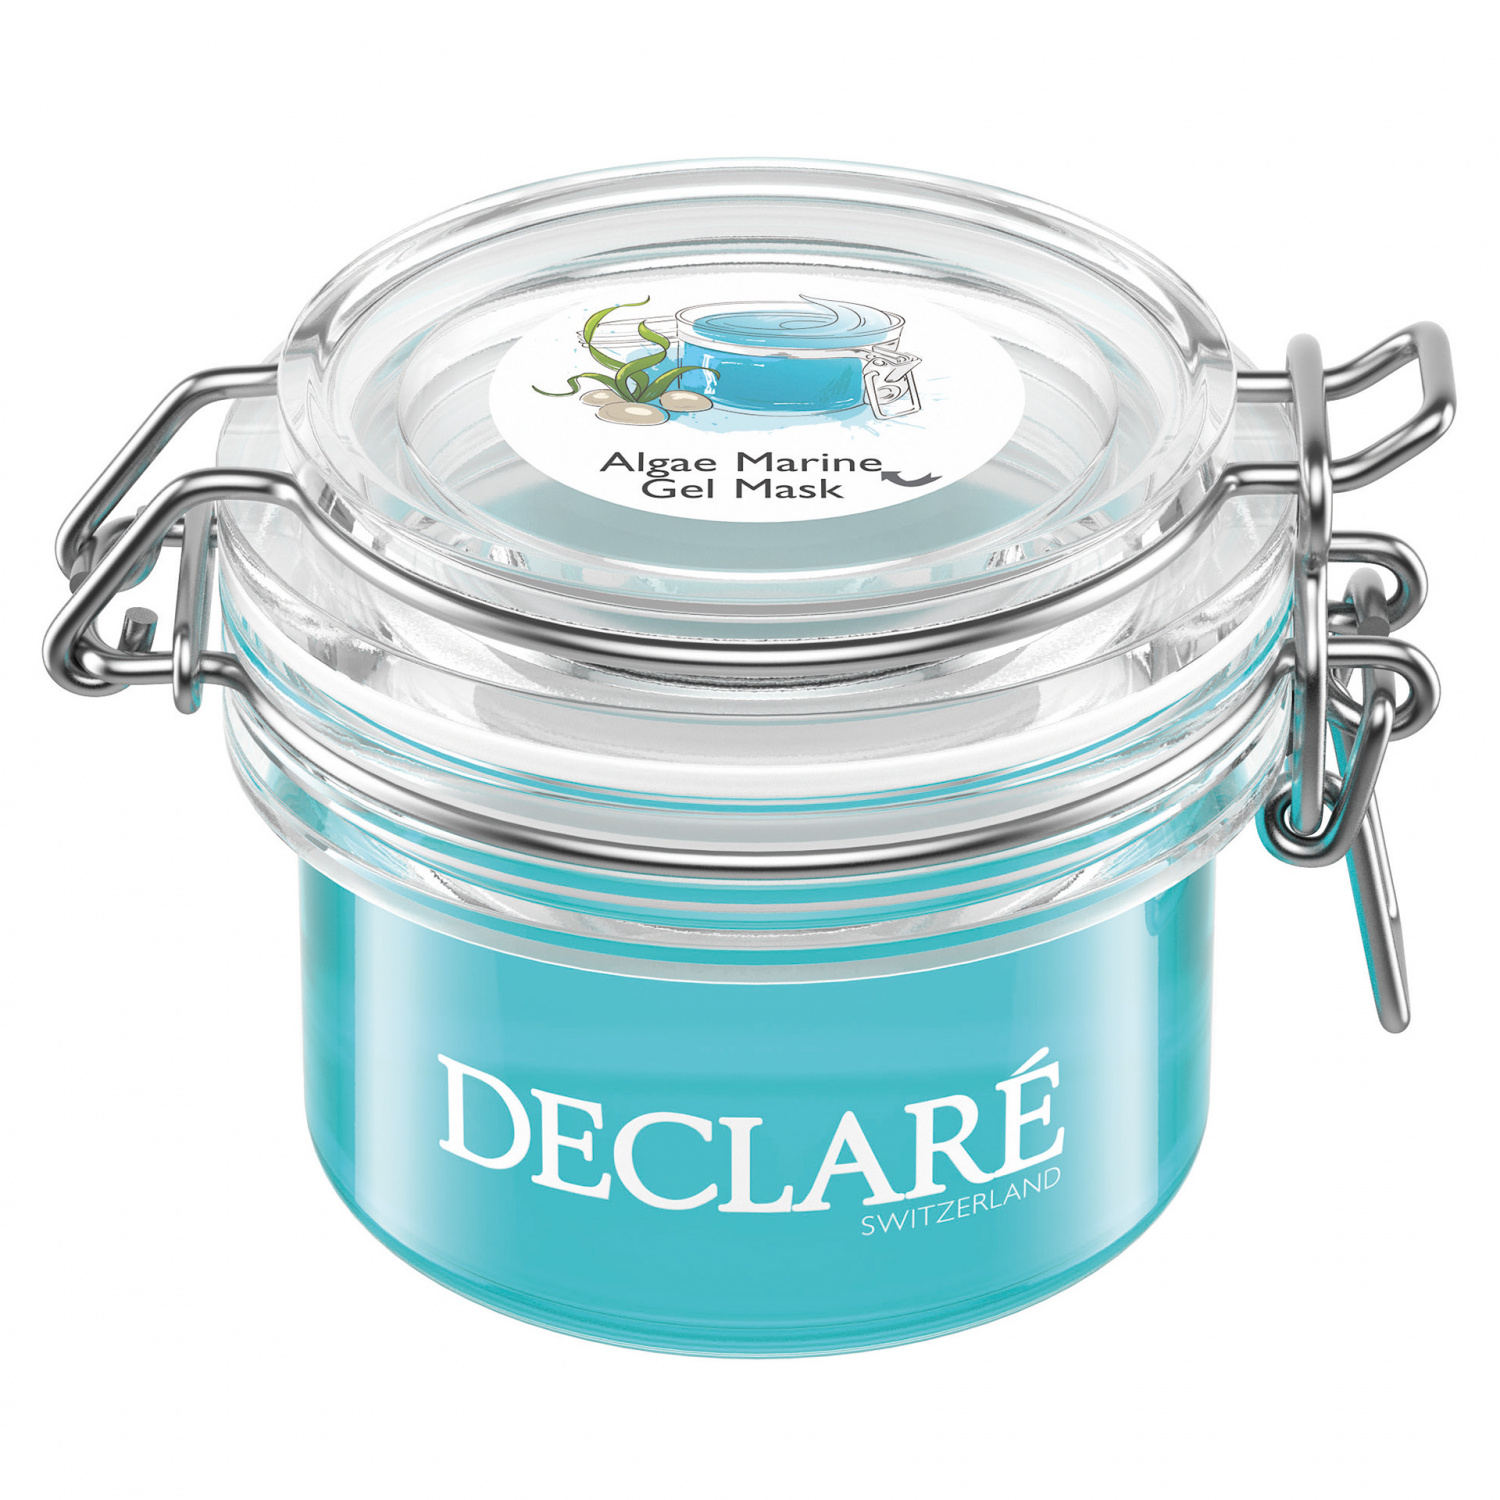 Declare Algae Marine Gel Mask 50ml. - интернет-магазин профессиональной косметики Spadream, изображение 27742